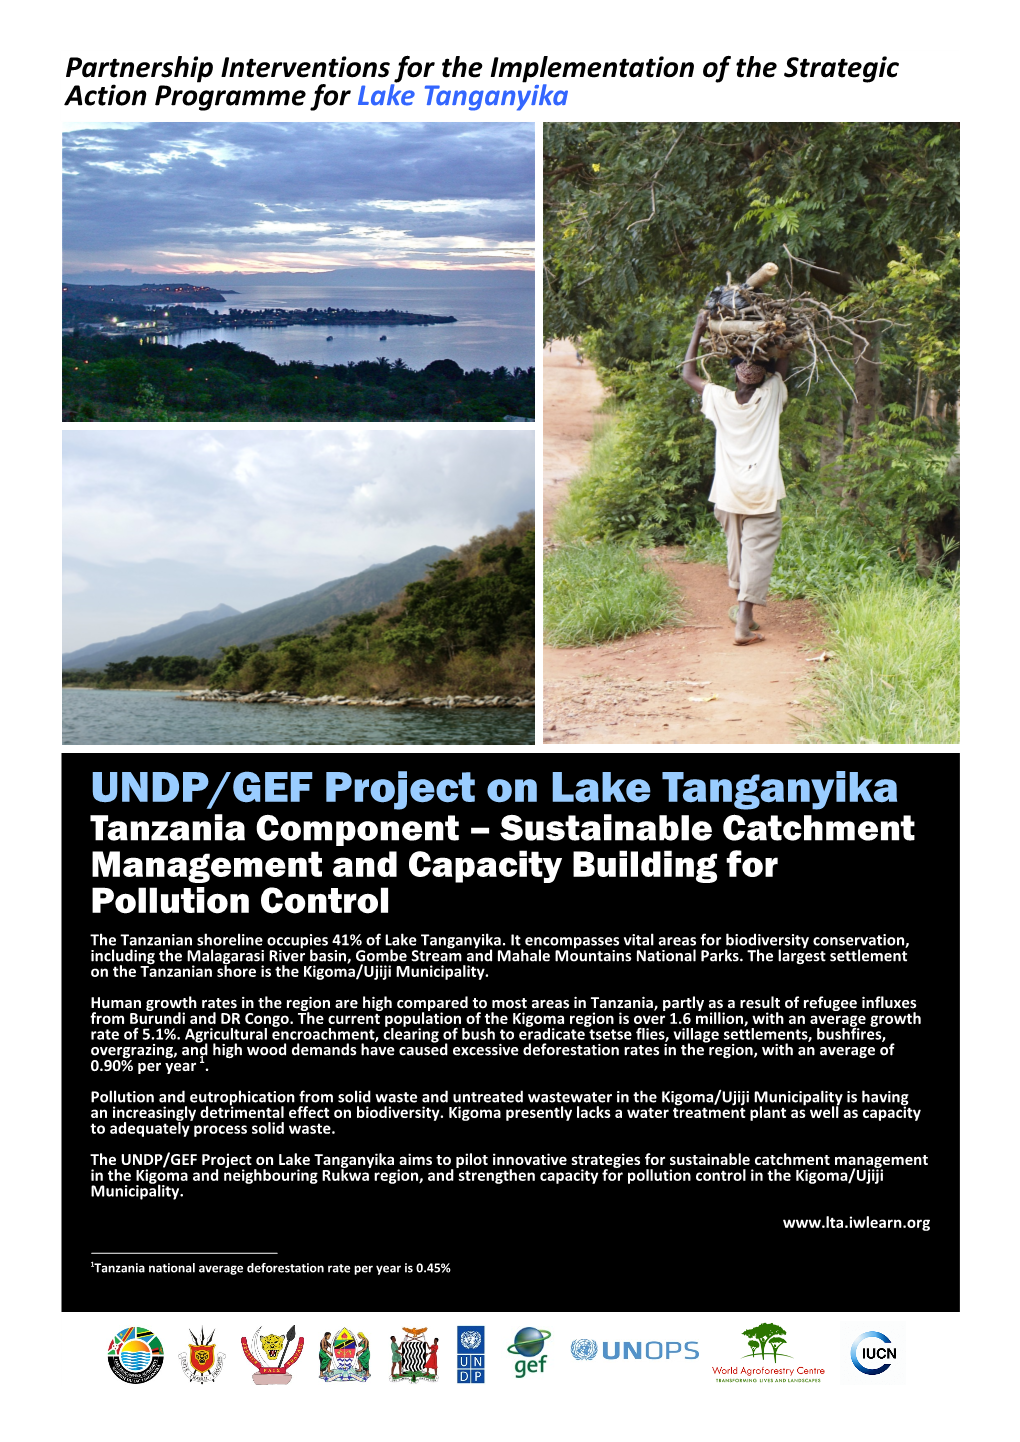 UNDP/GEF Project on Lake Tanganyika